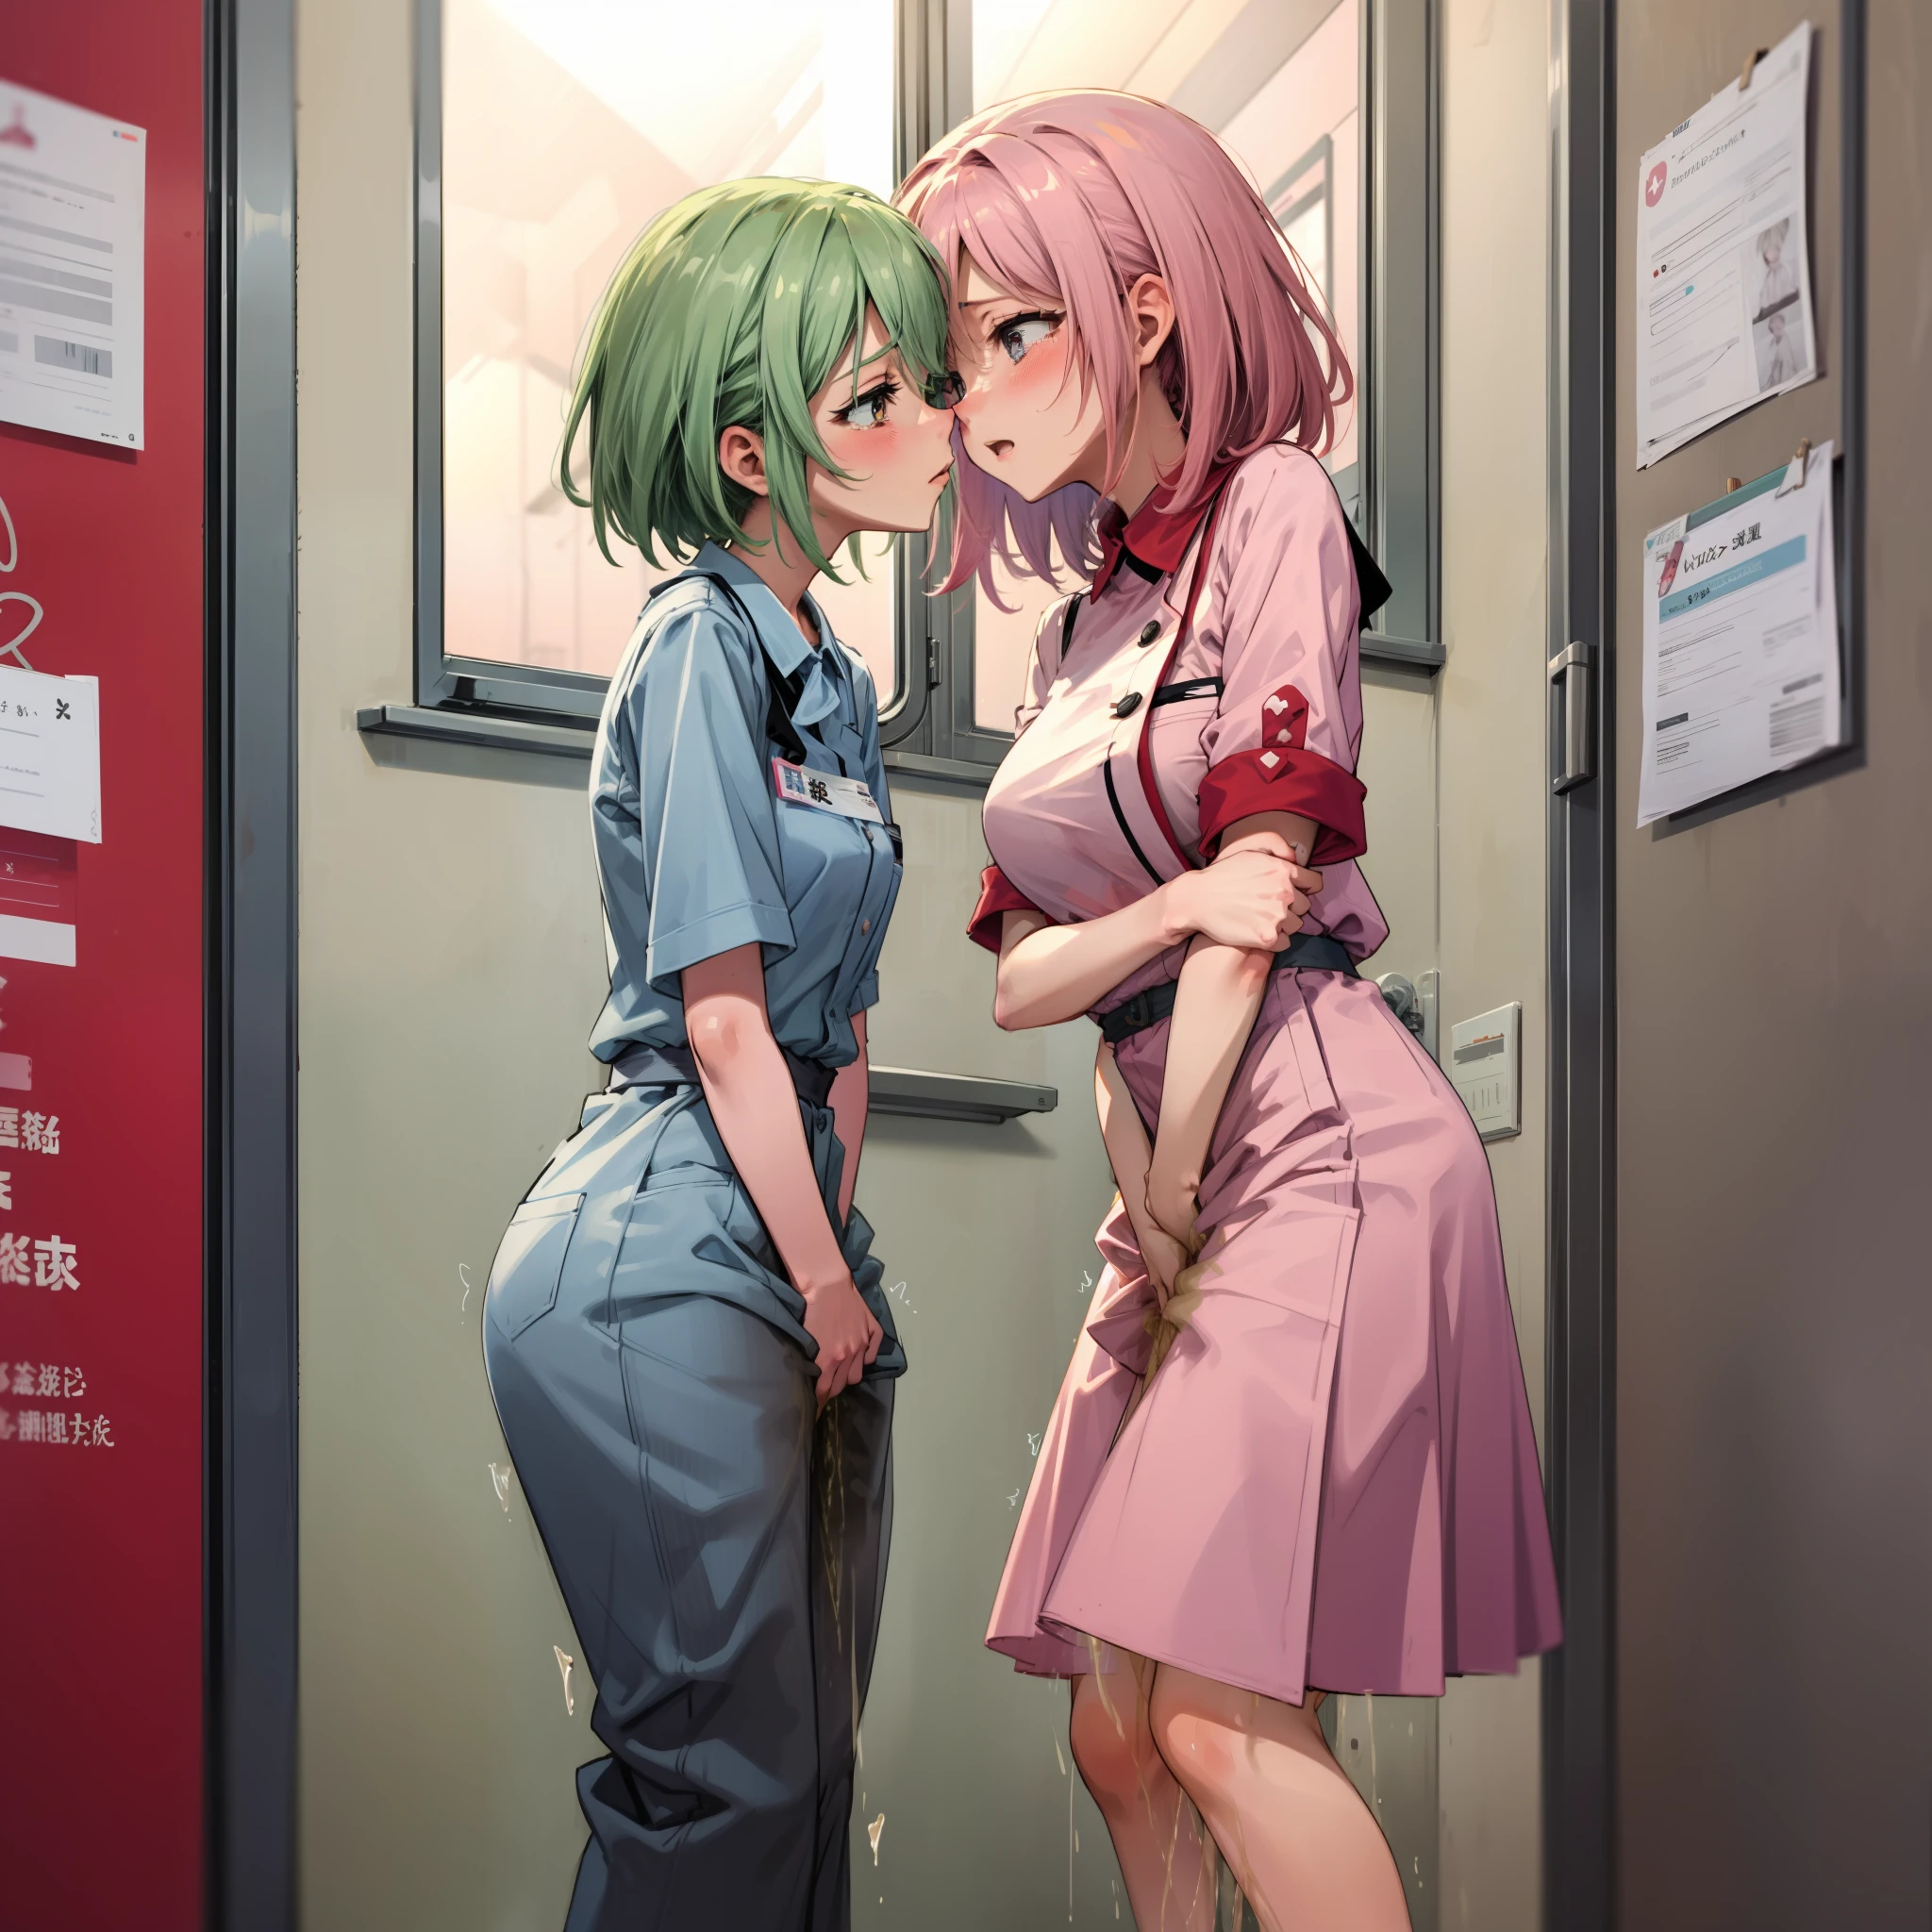 Dos enfermeras divirtiéndose en la sala de exploración.、Ley de metamorfosis de Mika lesbiana、Obsceno、lágrimas、mirada desesperada、rubor rojo、pechos discretos、orinarse ella misma、el beso